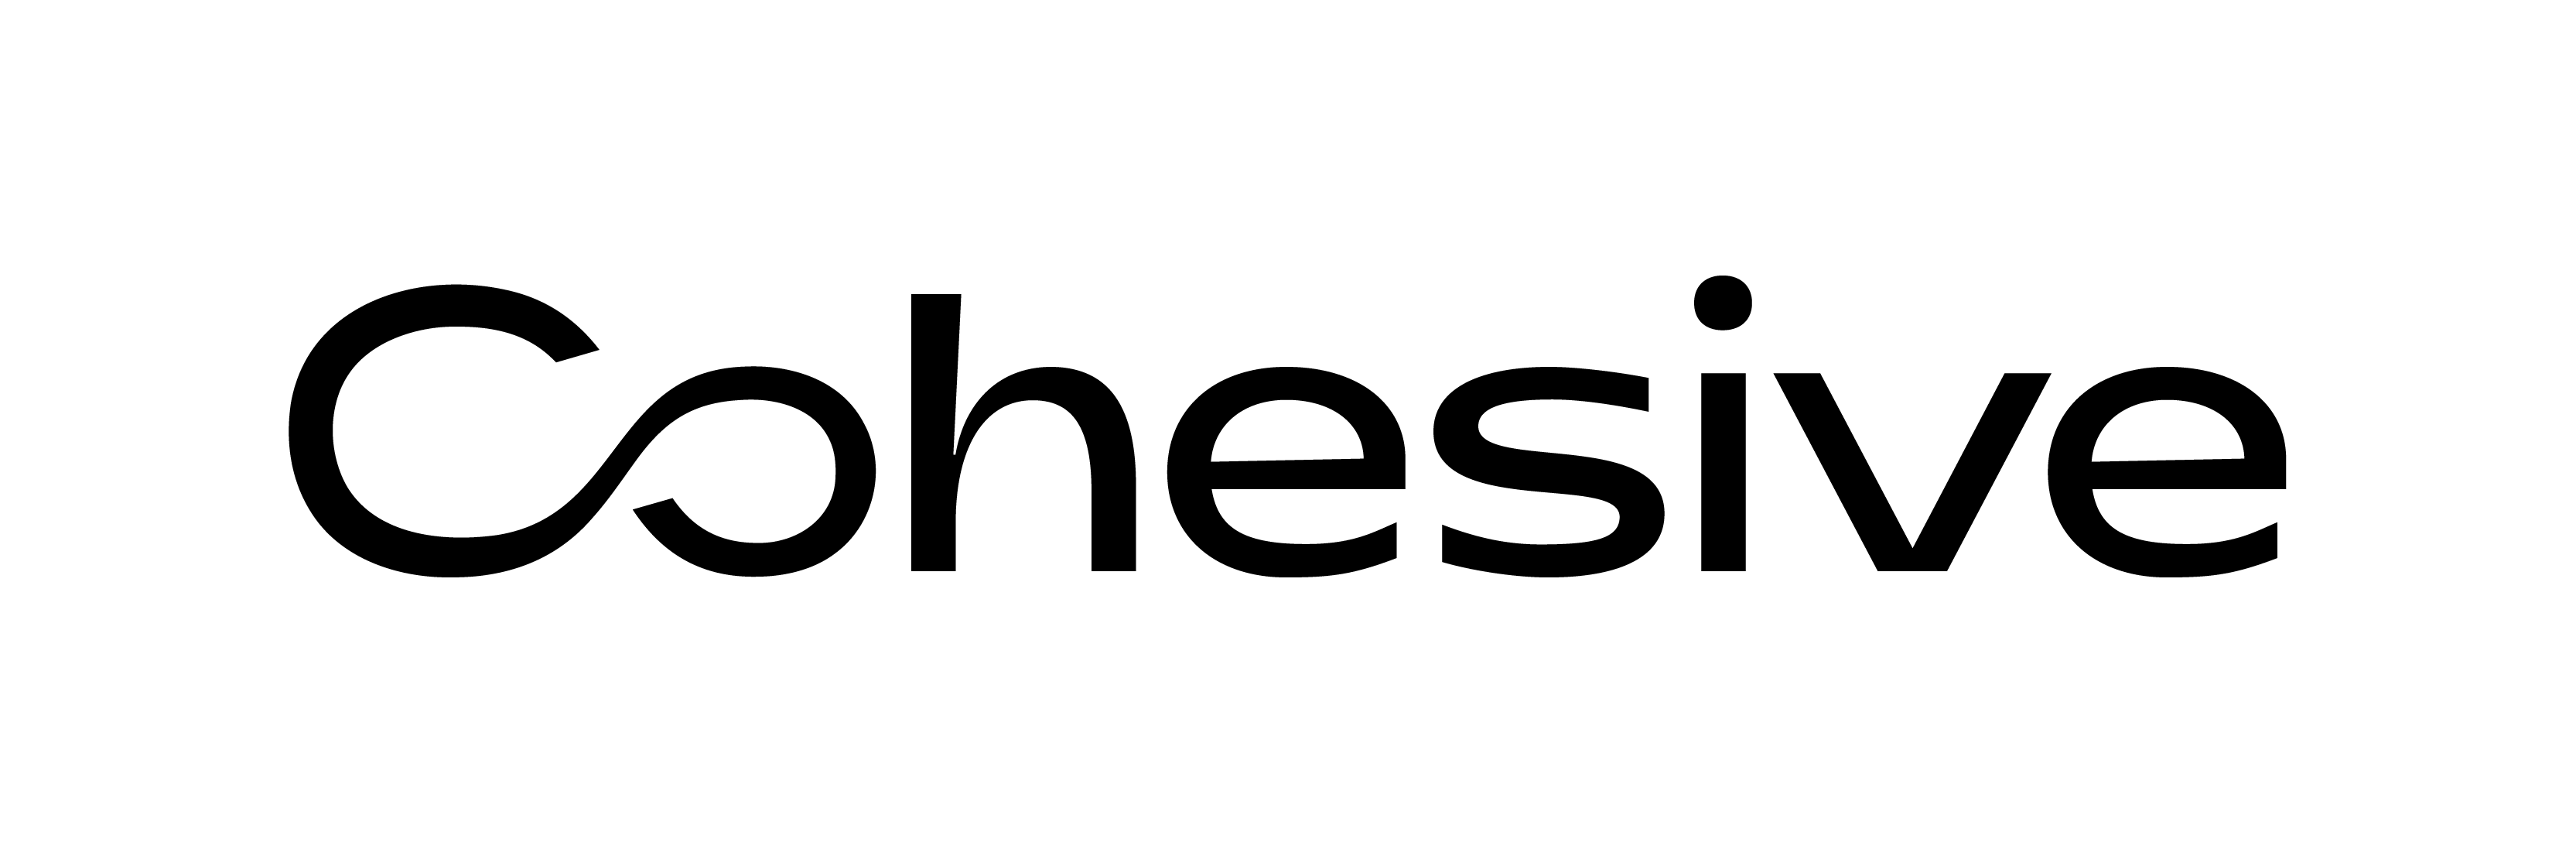 Cohesive logo in black